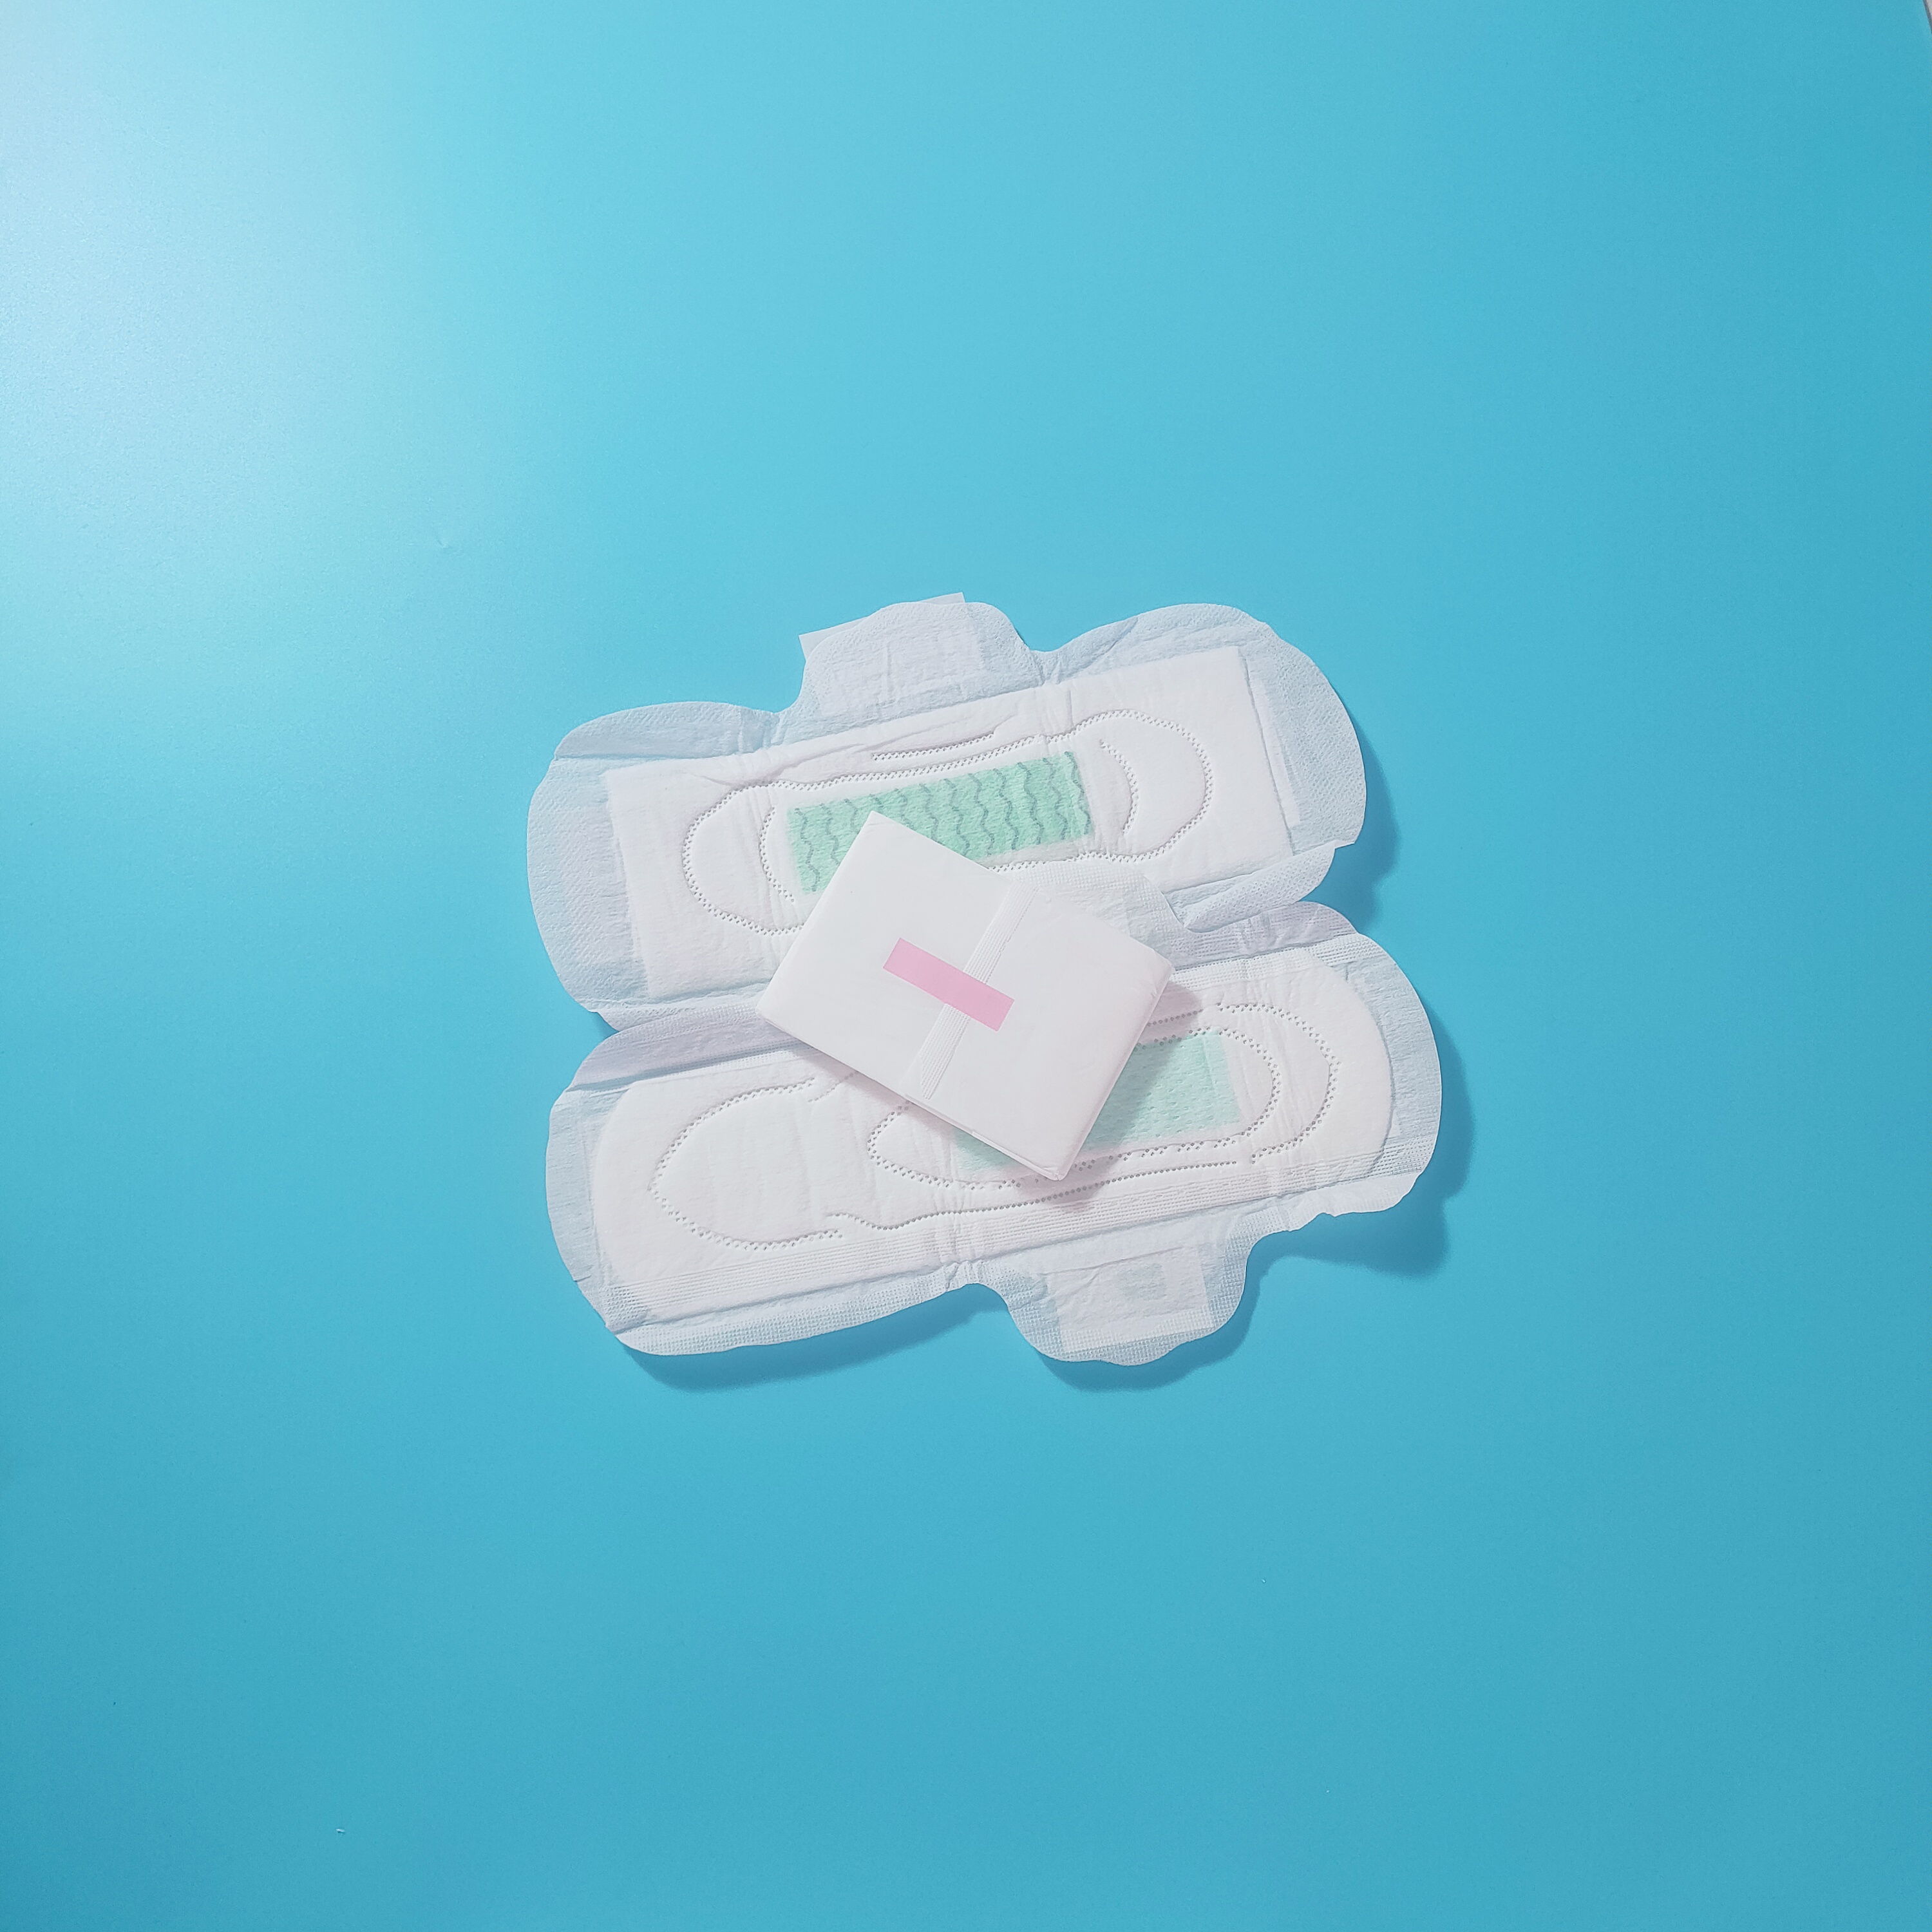 Damska podpaska higieniczna Hurtownia damskich podpasek na okres menstruacyjny